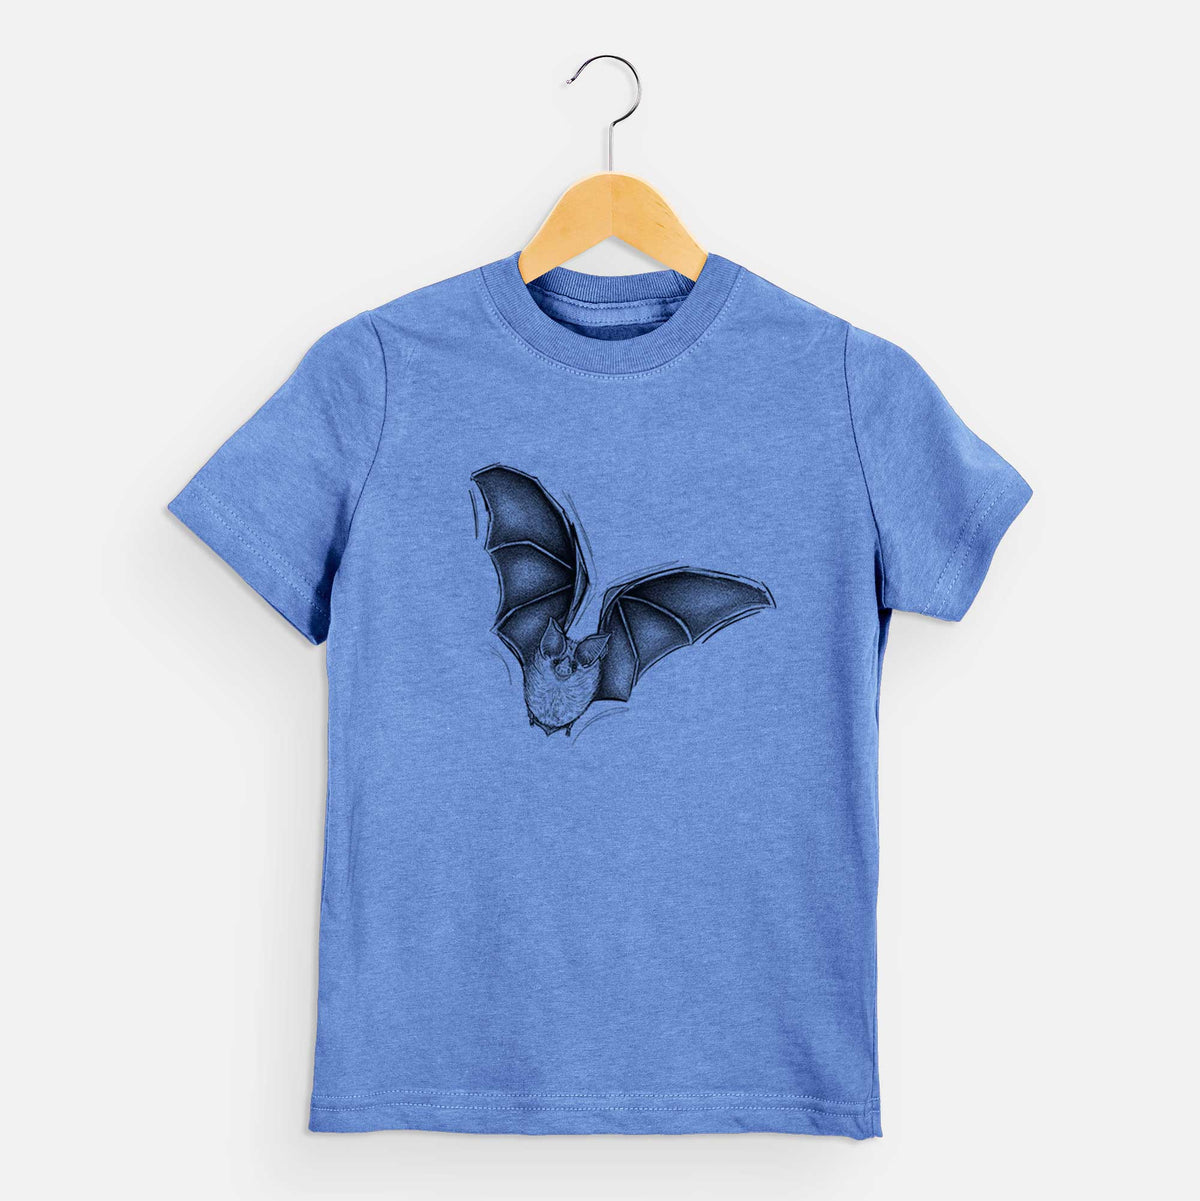 Macrotus californicus - California Leaf-nosed Bat - Kids Shirt